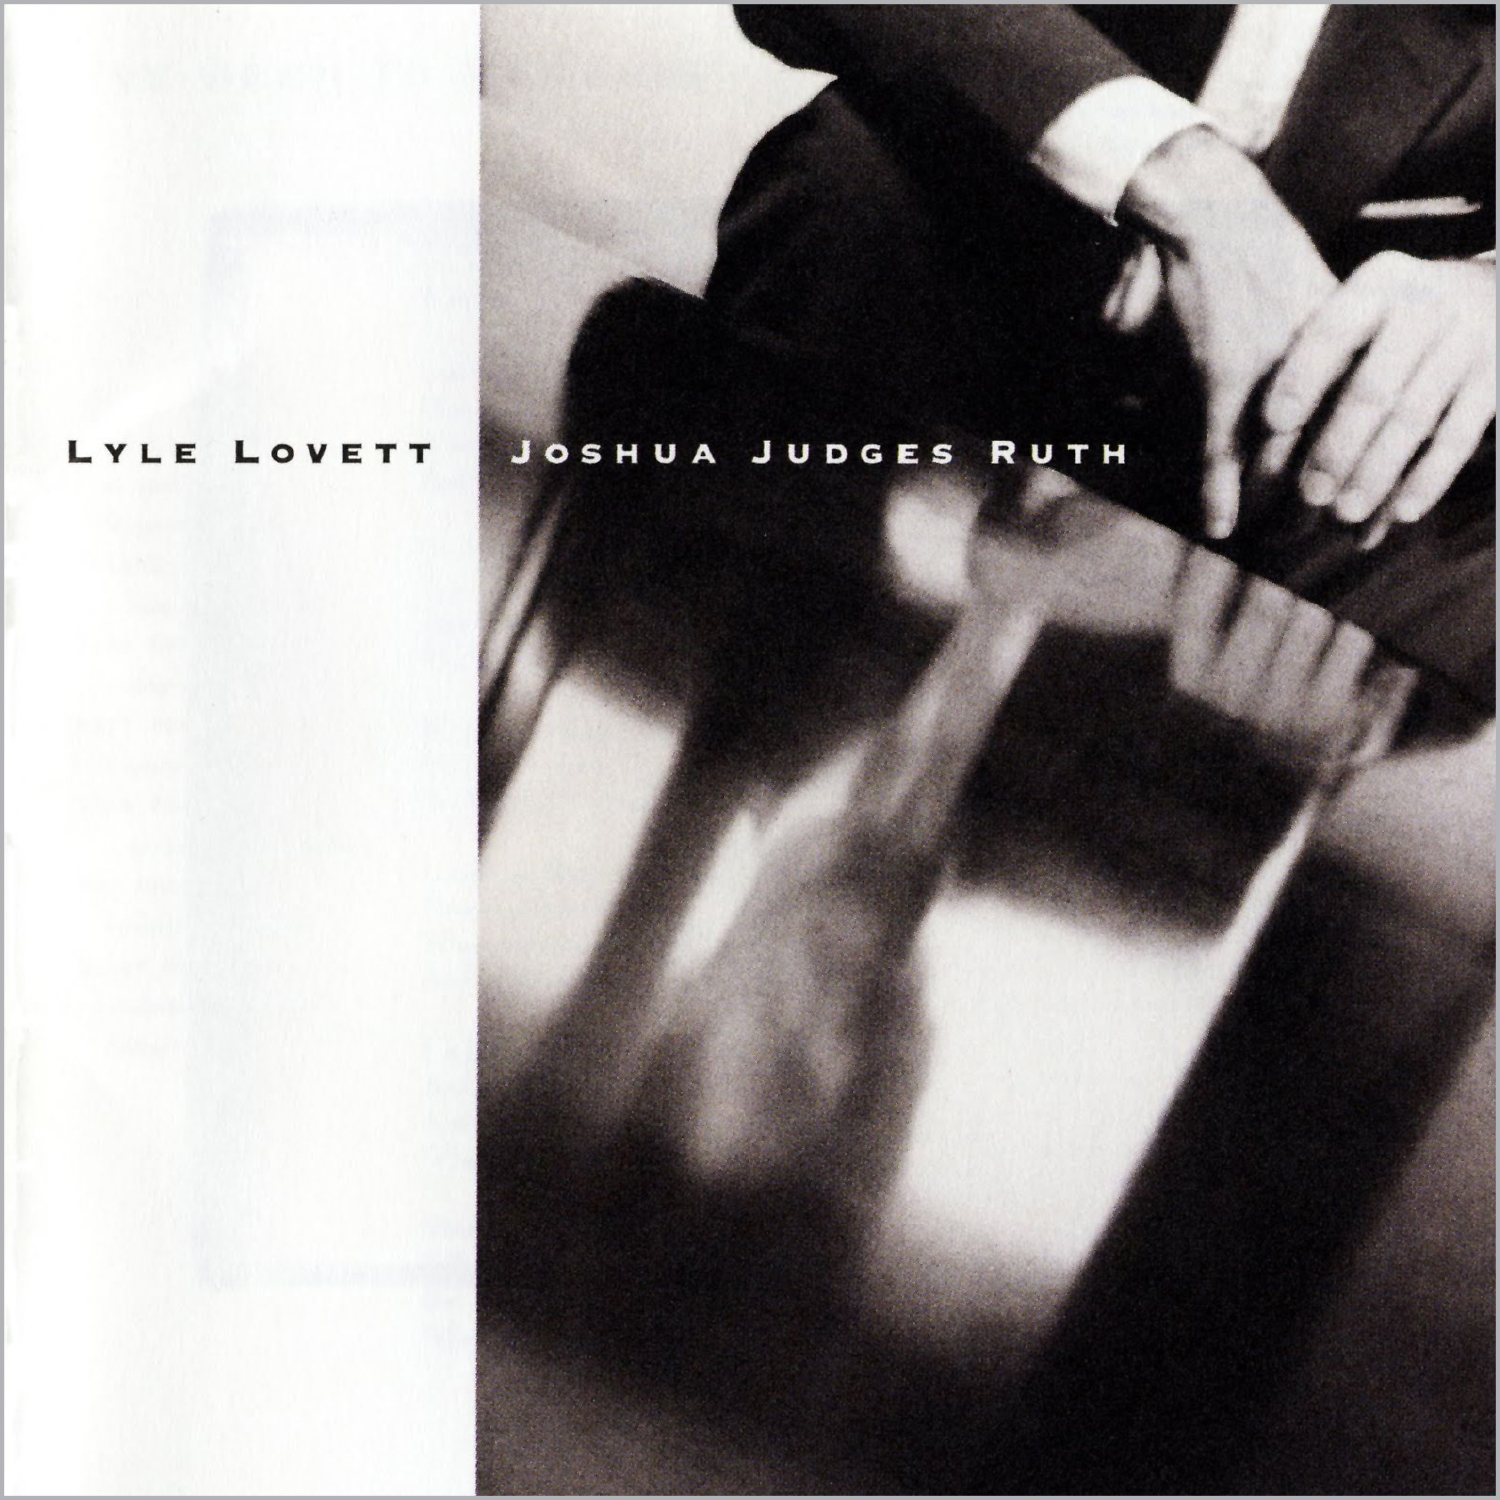 1992: Lyle Lovett, Joshua Judges Ruth